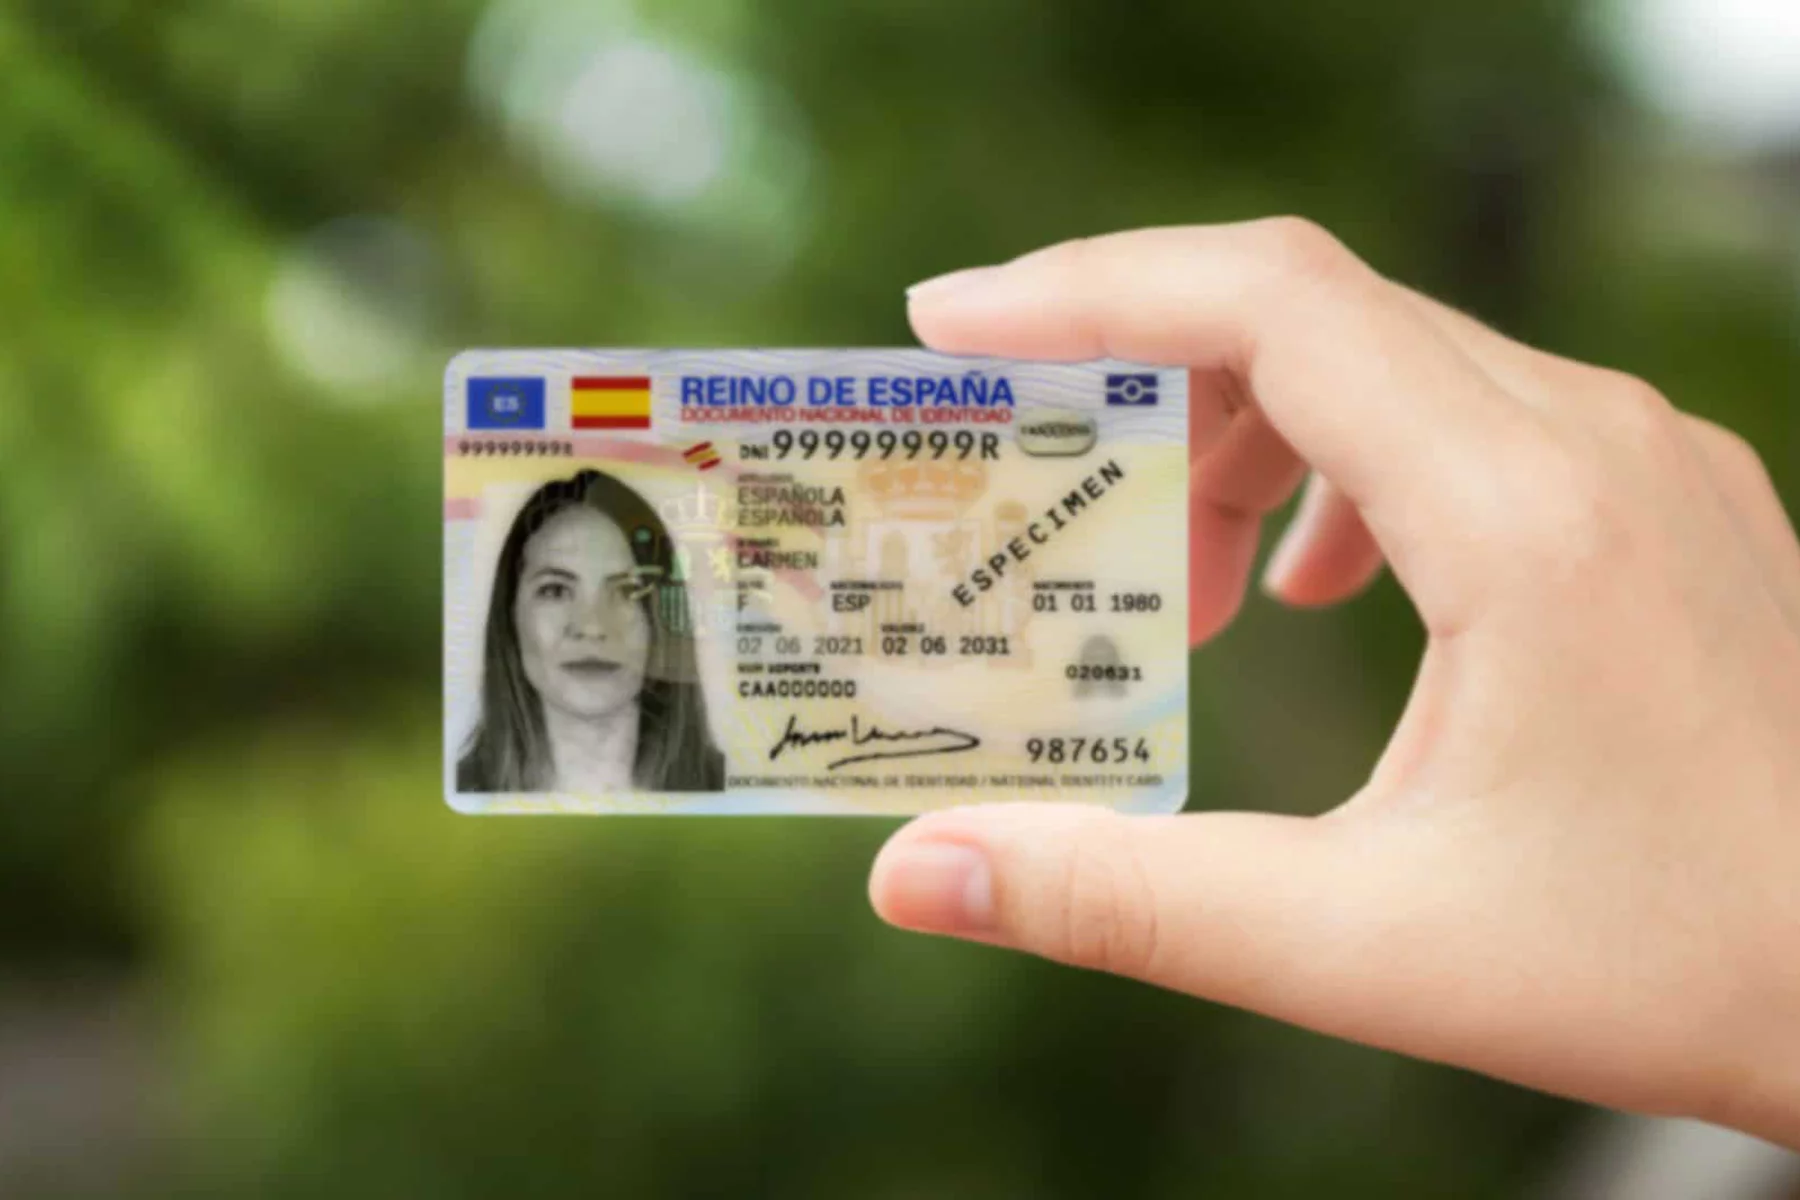 Sample DNI card in Spain